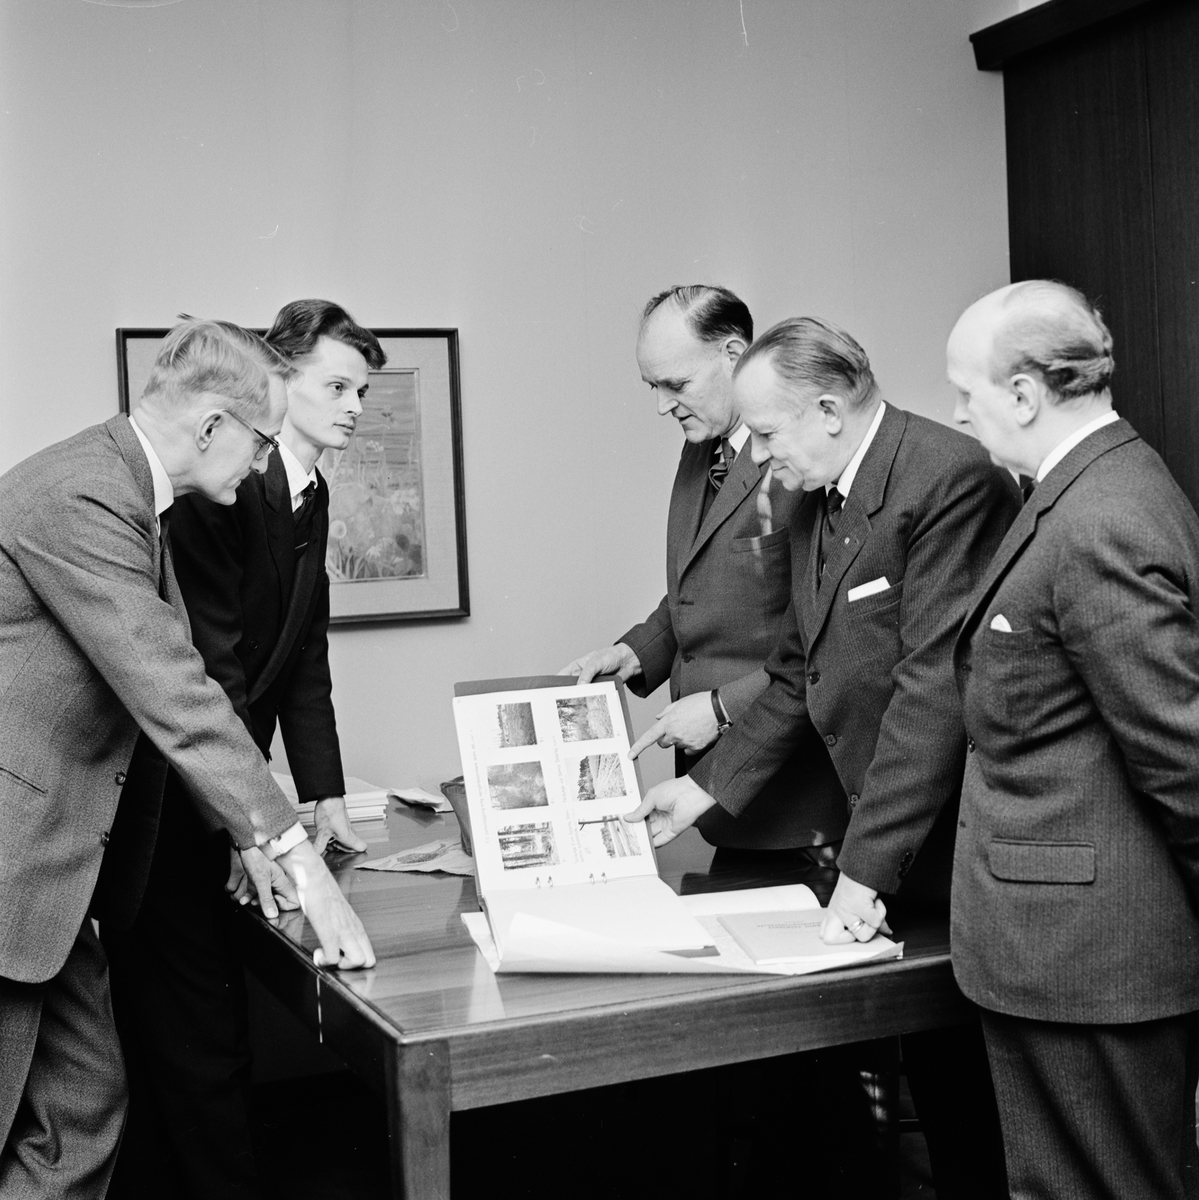 Från höger kanslichefen Per Elfvik, landstingets ordförande John Lundberg, förvaltningsutskottets ordförande AGA Carlsson samt två okända män, Uppsala 1963